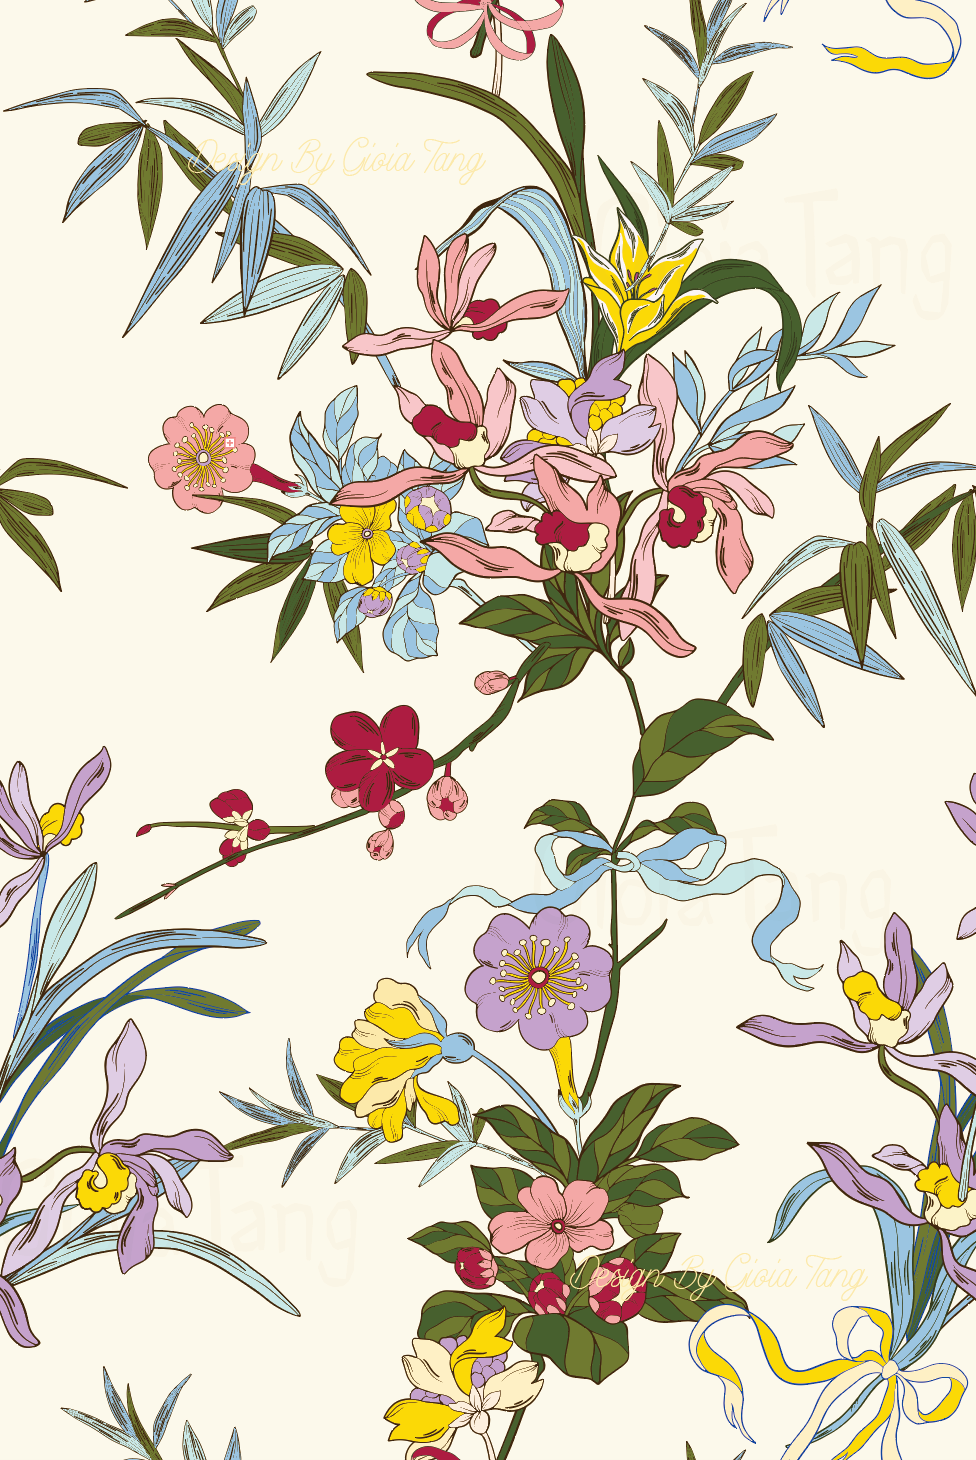 pattern design Graphic Designer Patterns textures illustrations digital illustration Flowers flowerpattern floral